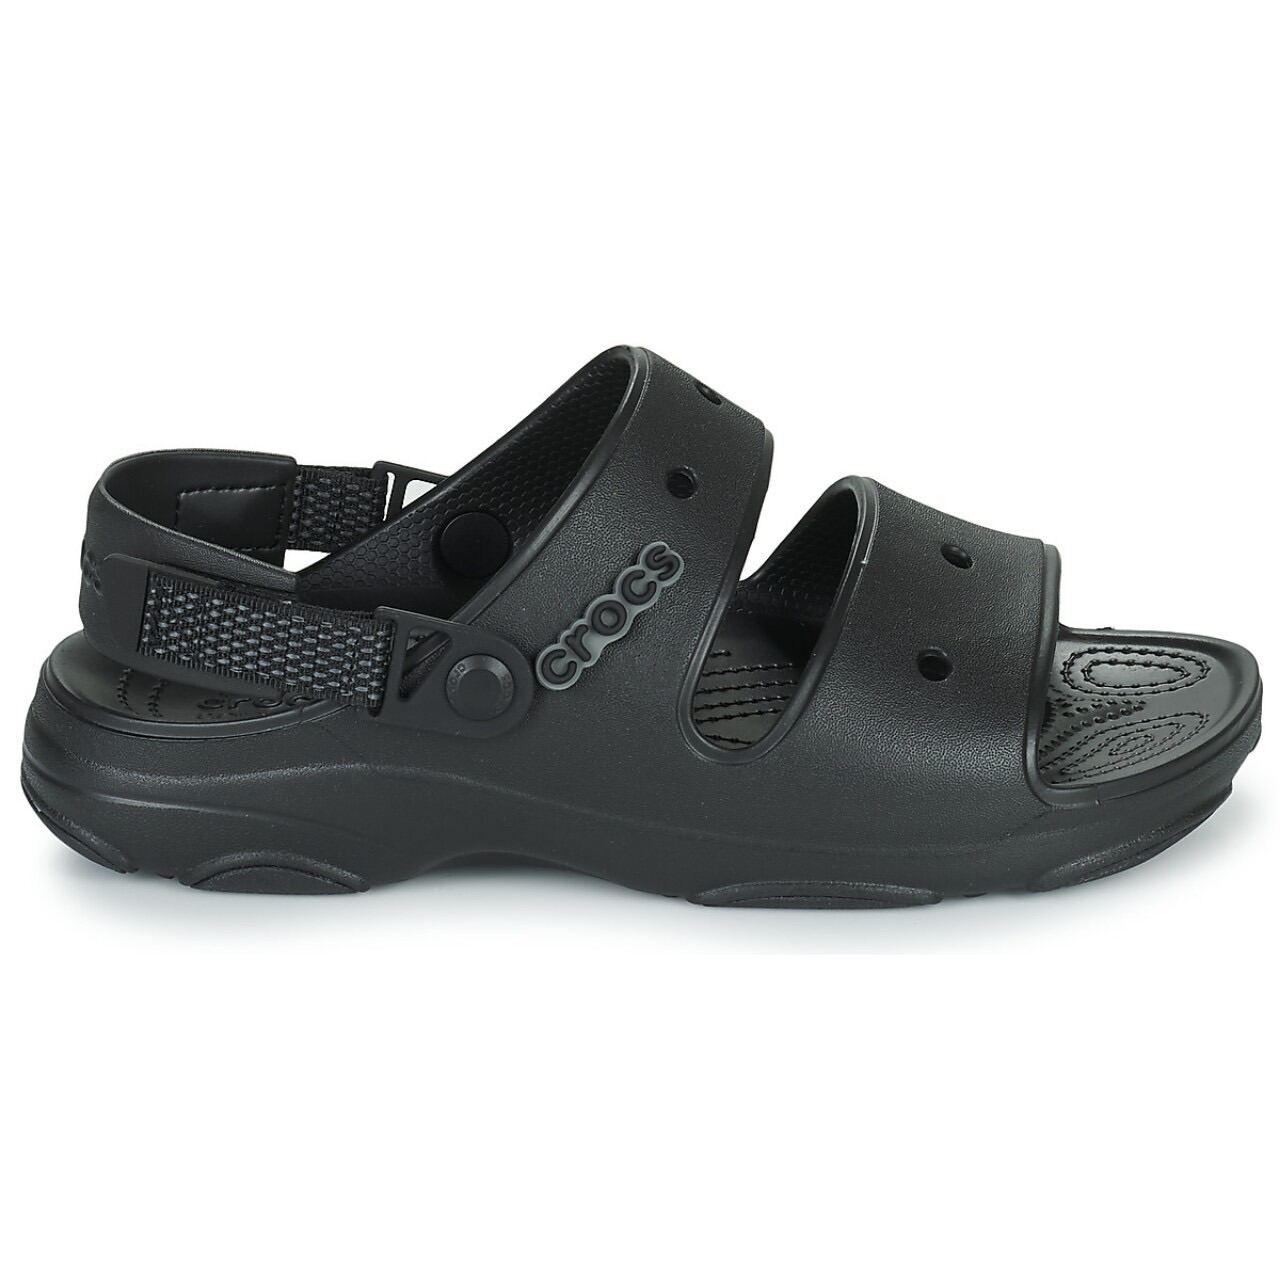 Dép sandal crocs nhựa mềm hàng chính hãng xuất khẩu xịn c.roc.s shoes  giầy dép thời trang nam nữ